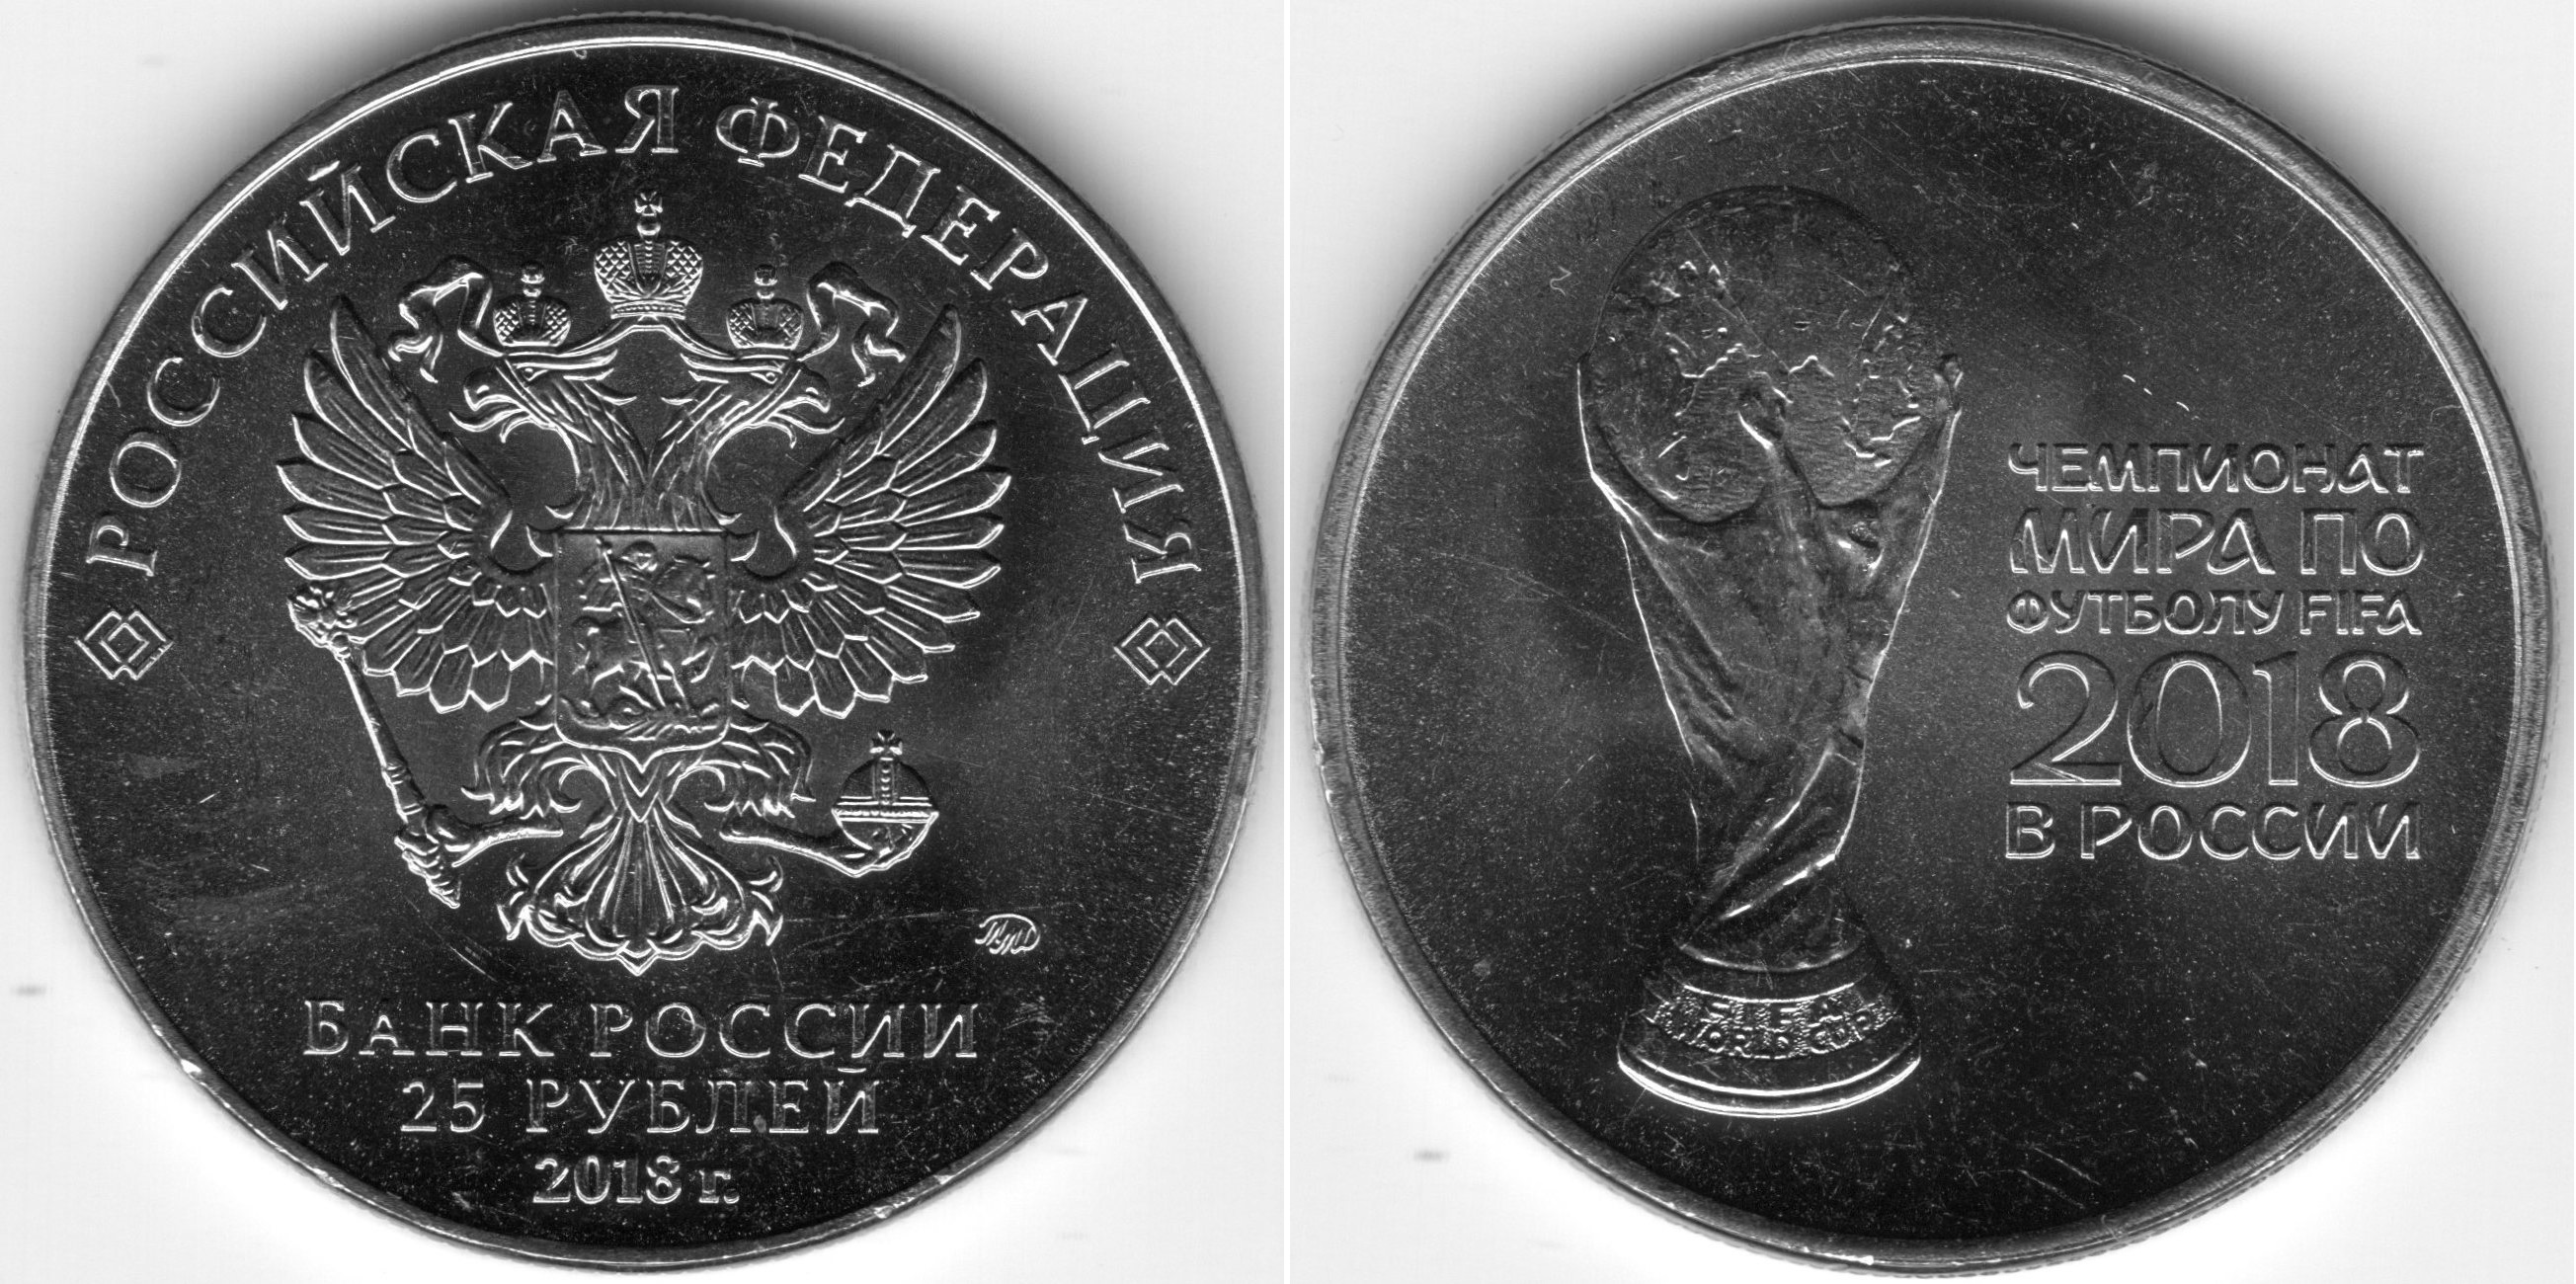 25 Рублей. 25 Рублей железные. Новые 25 рублевые монеты. Сколько стоит 20 рублей железные